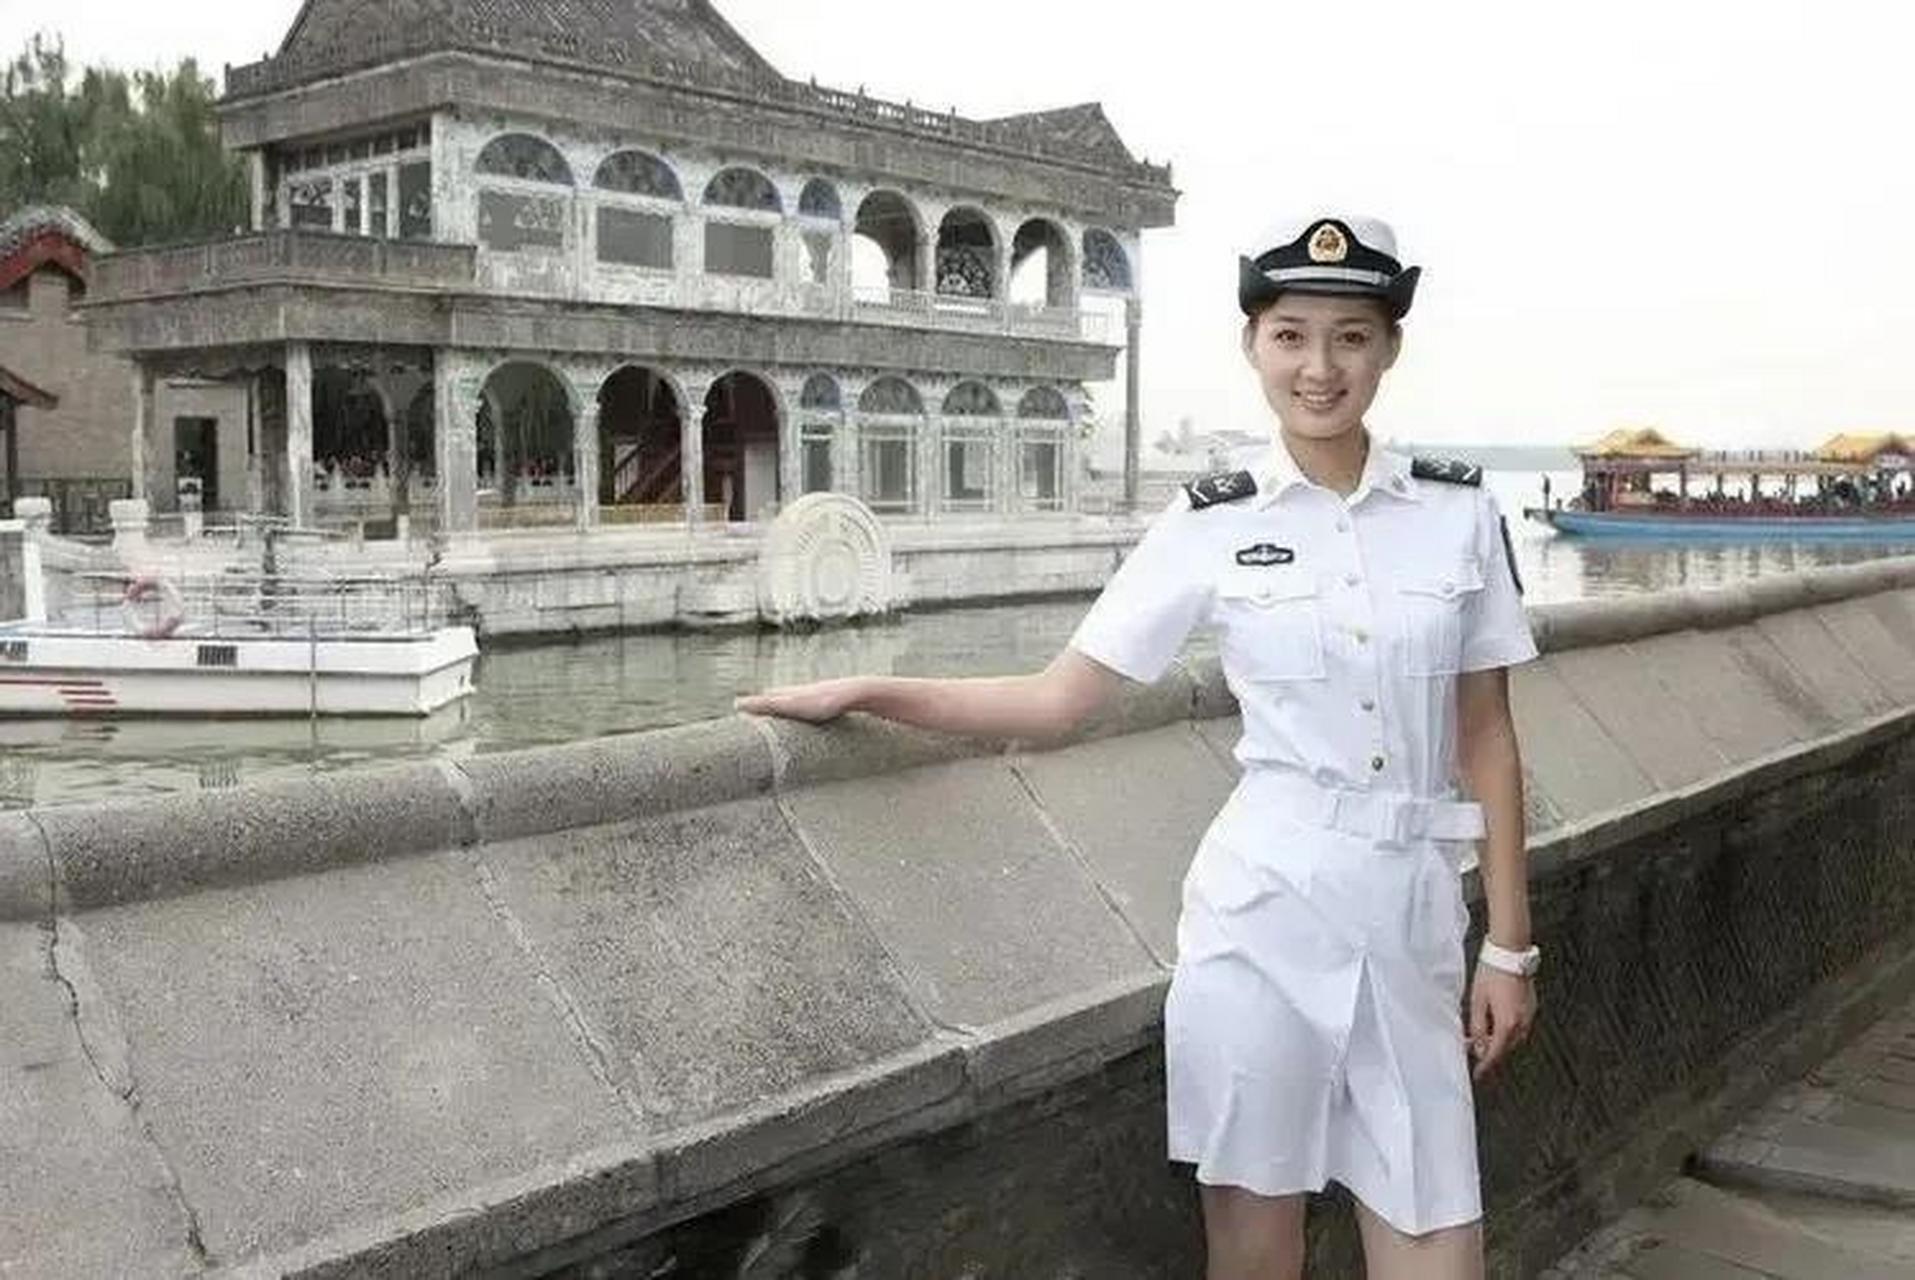 一位英姿飒爽的女海军士兵在颐和园内留下了一张美丽的照片